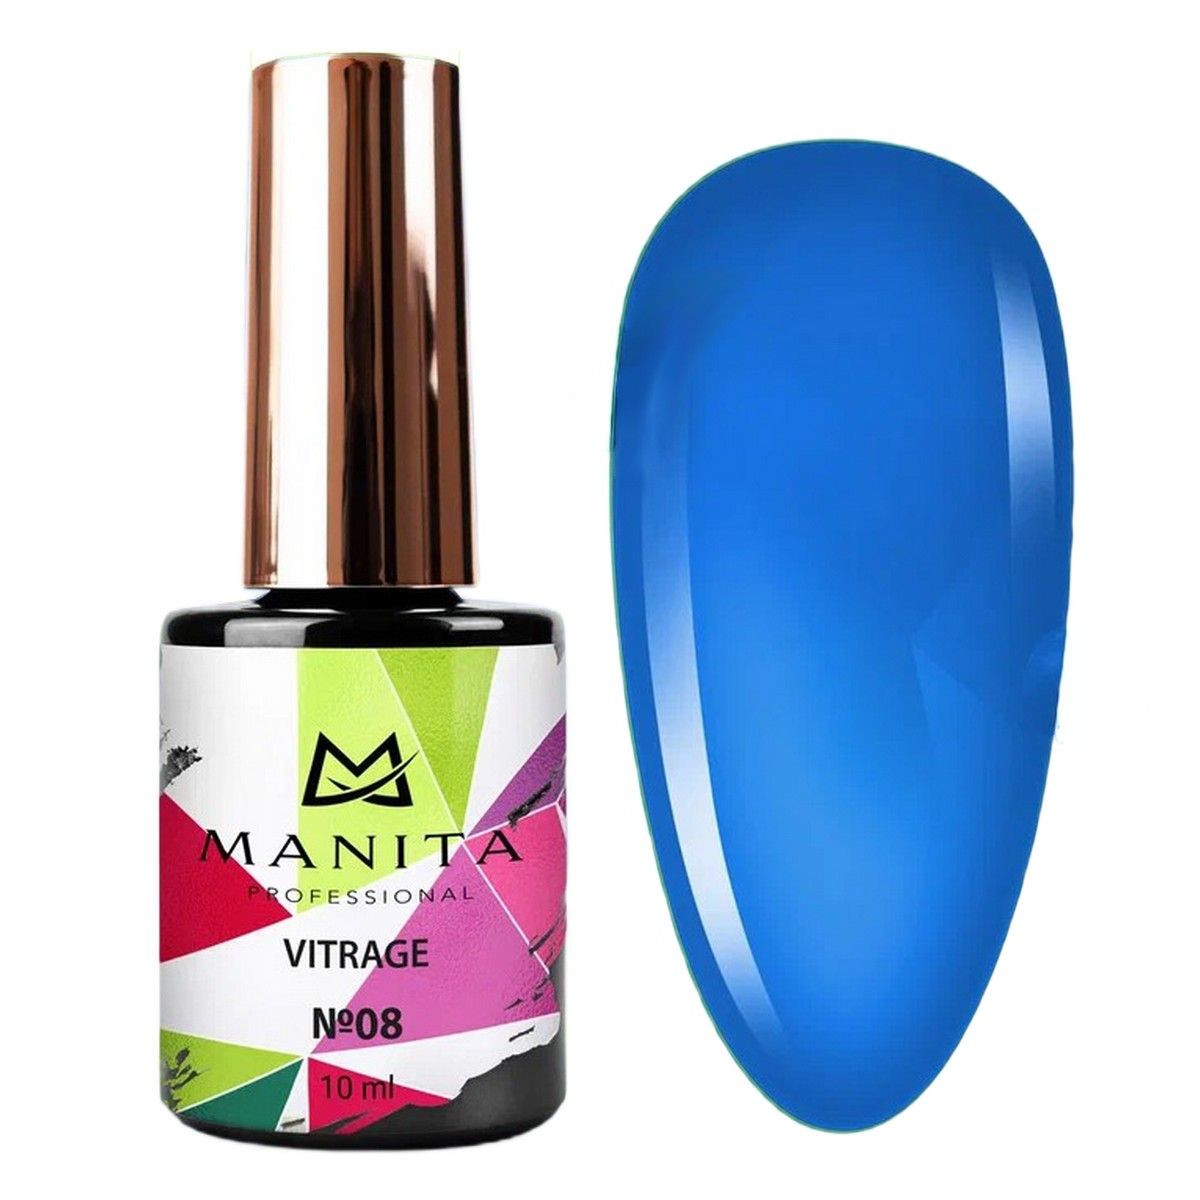 Гель-лак для ногтей Manita Professional c эффектом витража Vitrage №08, синий, 10 мл manita база каучуковая для гель лака rubber base